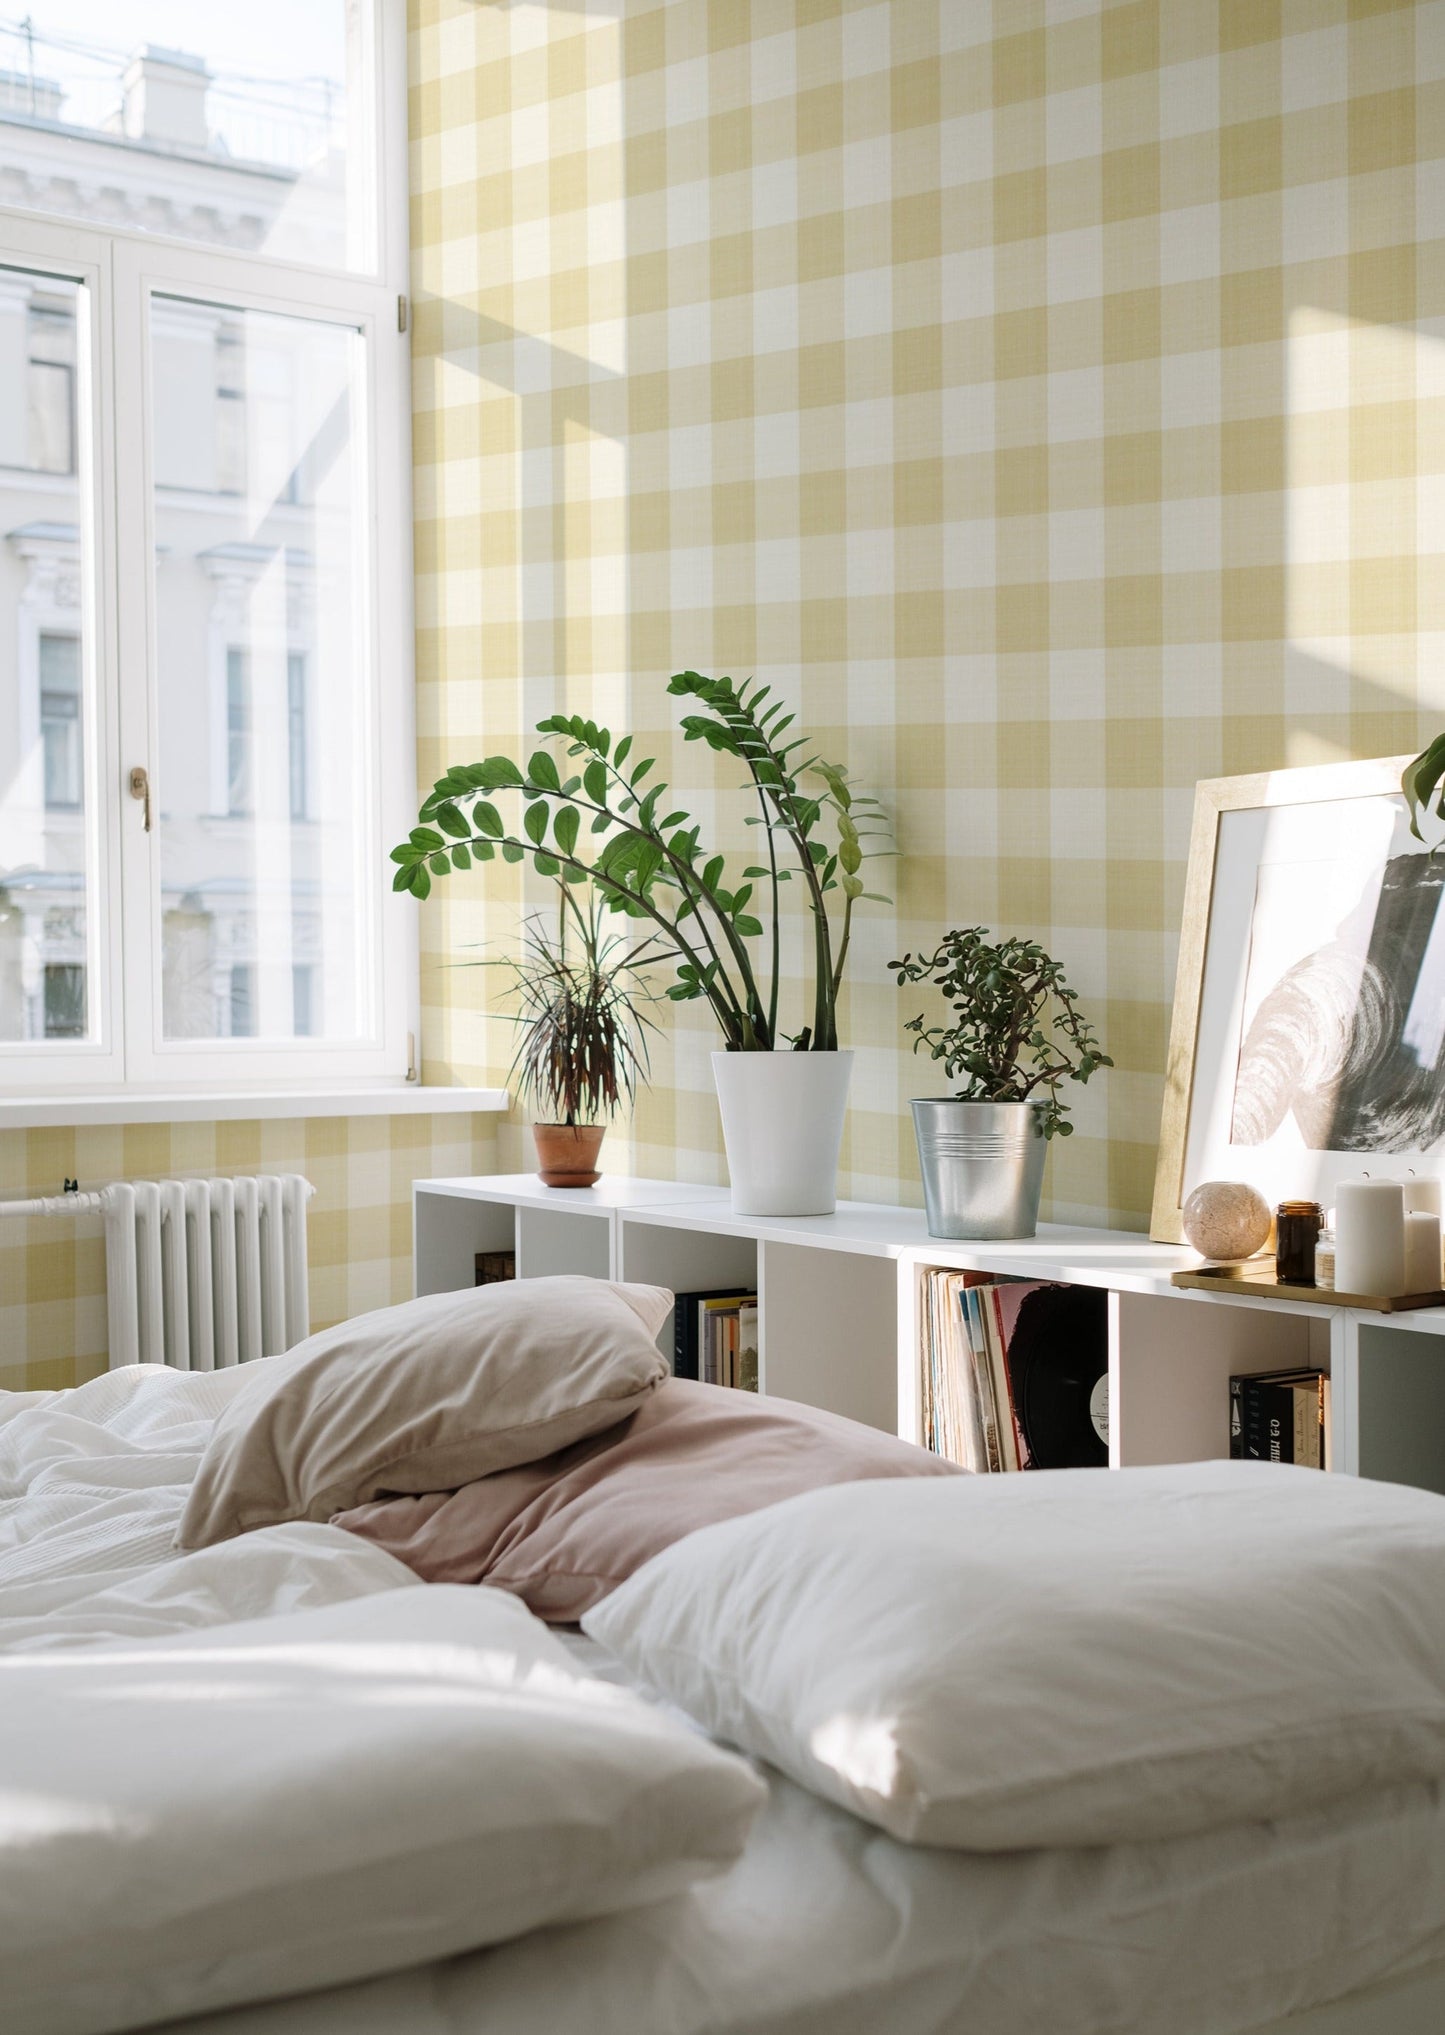 Wallpaper Checks - Linen - Yellow (SALE)